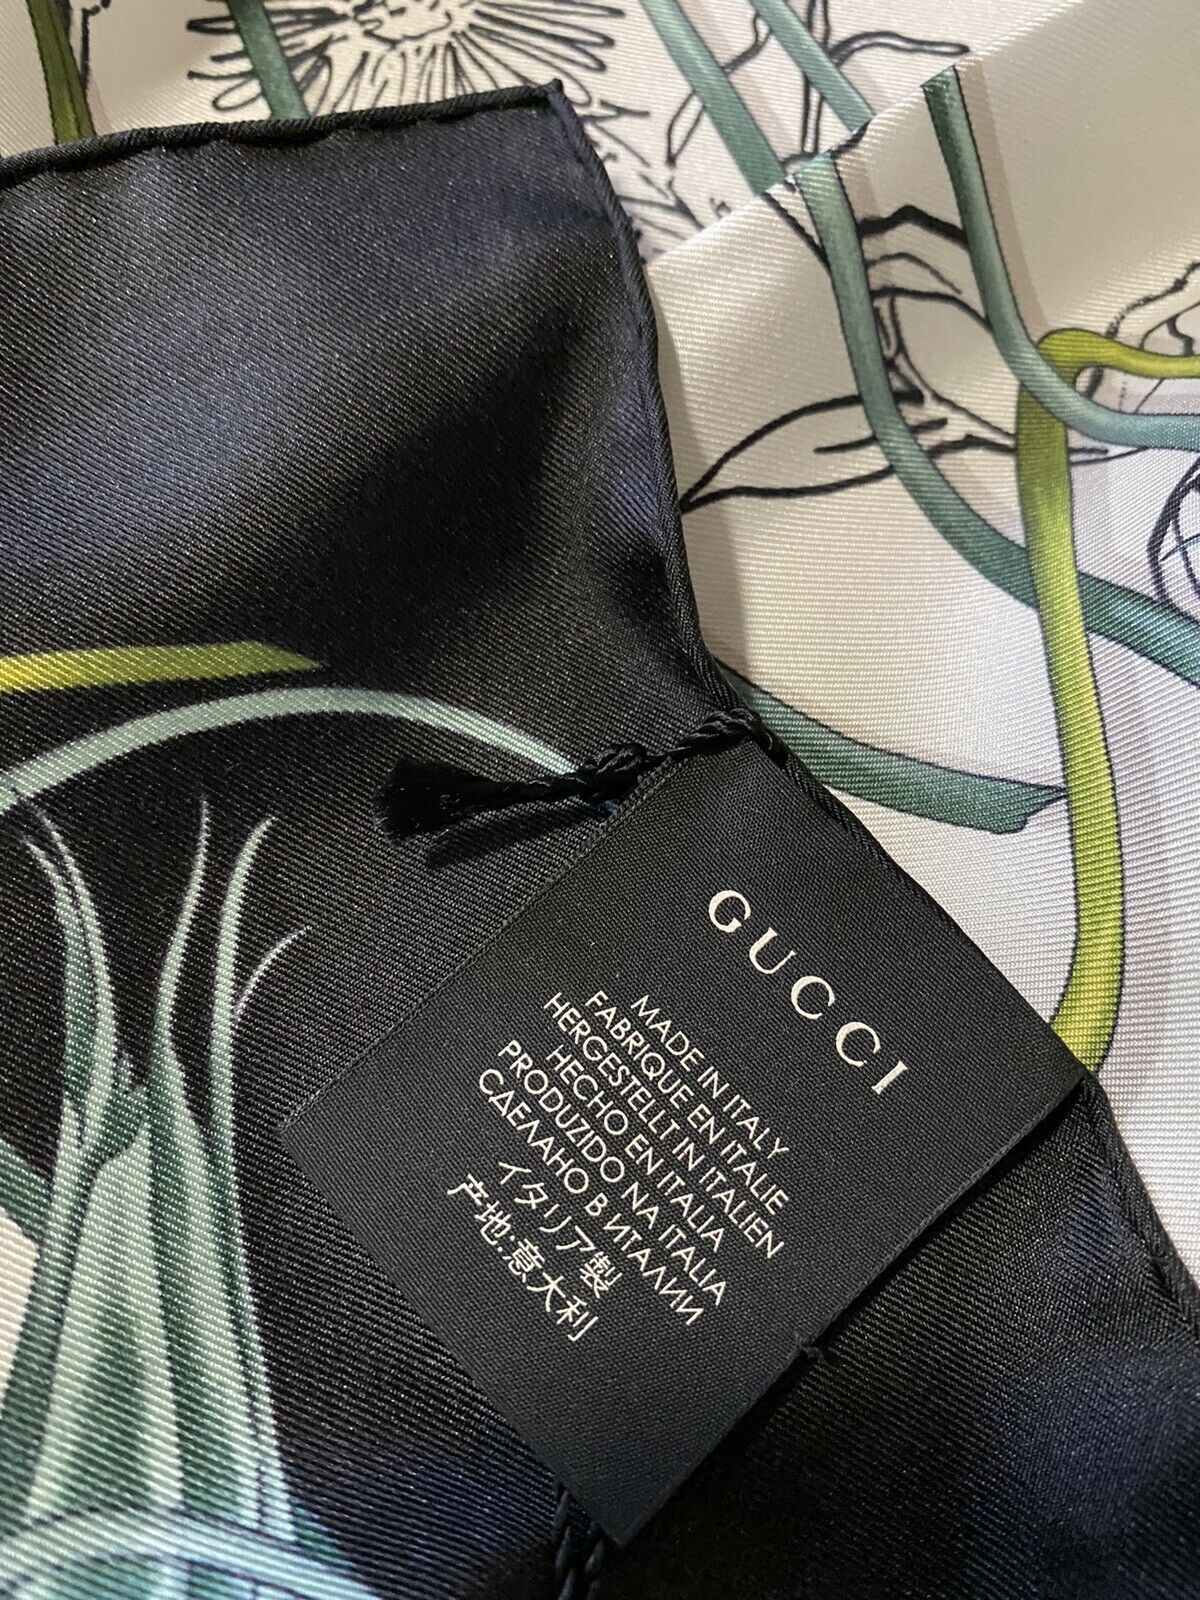 Новый женский шелковый платок Gucci Flora Stage за 495 долларов США, черный/белый шарф, Италия